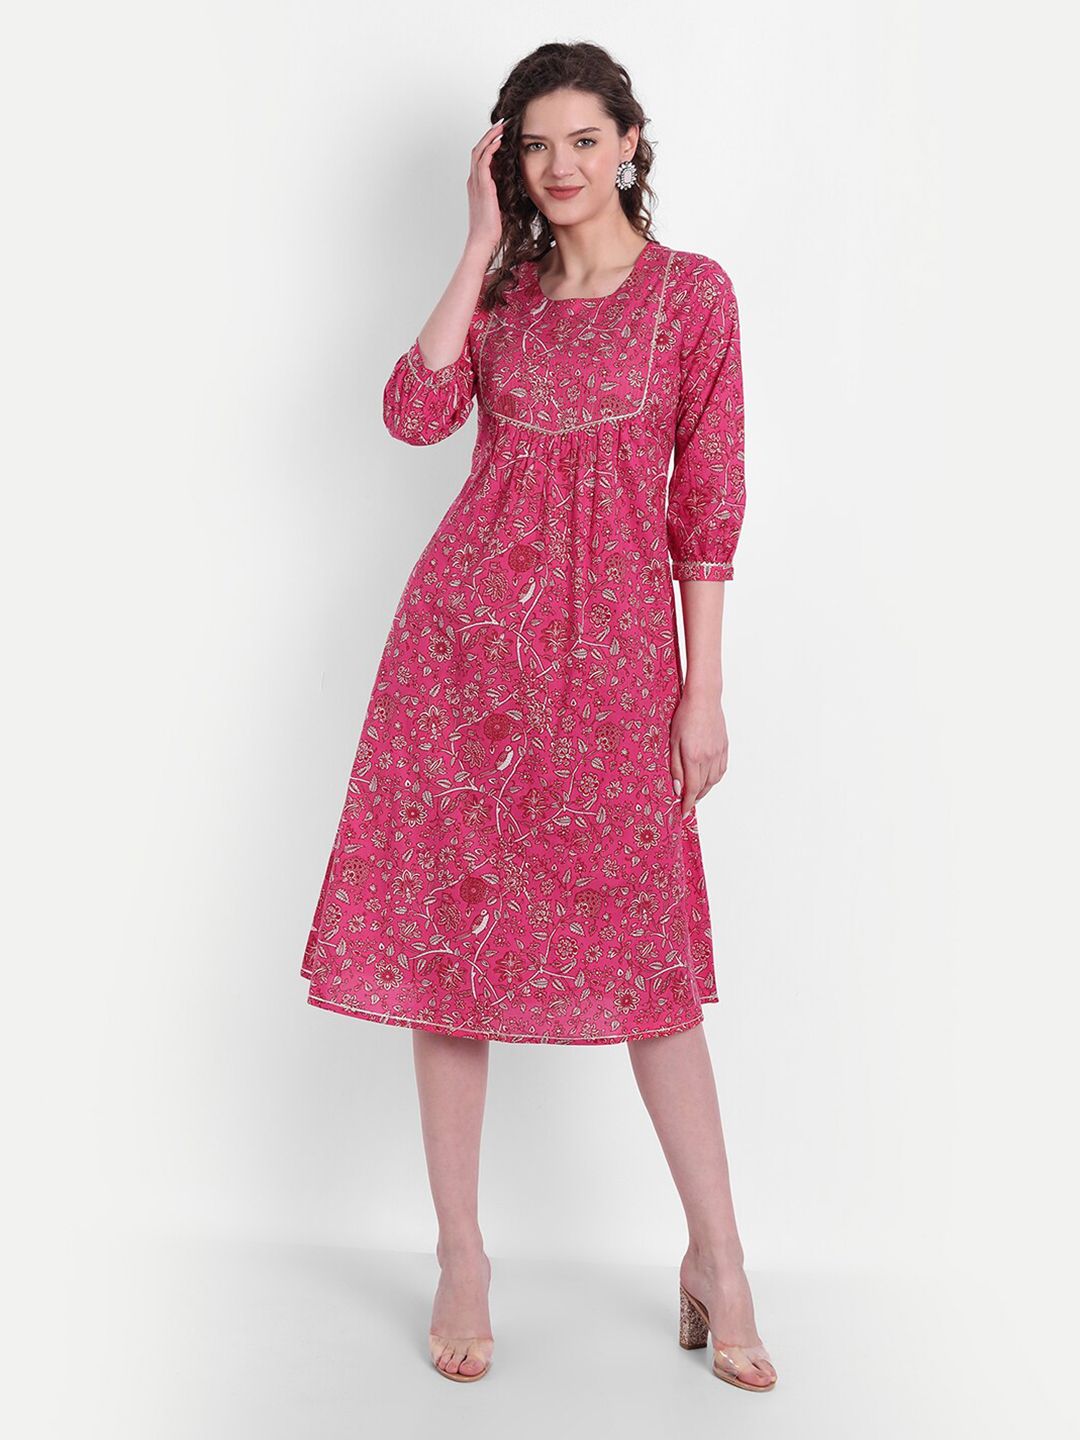 SUTI Fuchsia Women Floral Printed A-Line Midi Dress Price in India